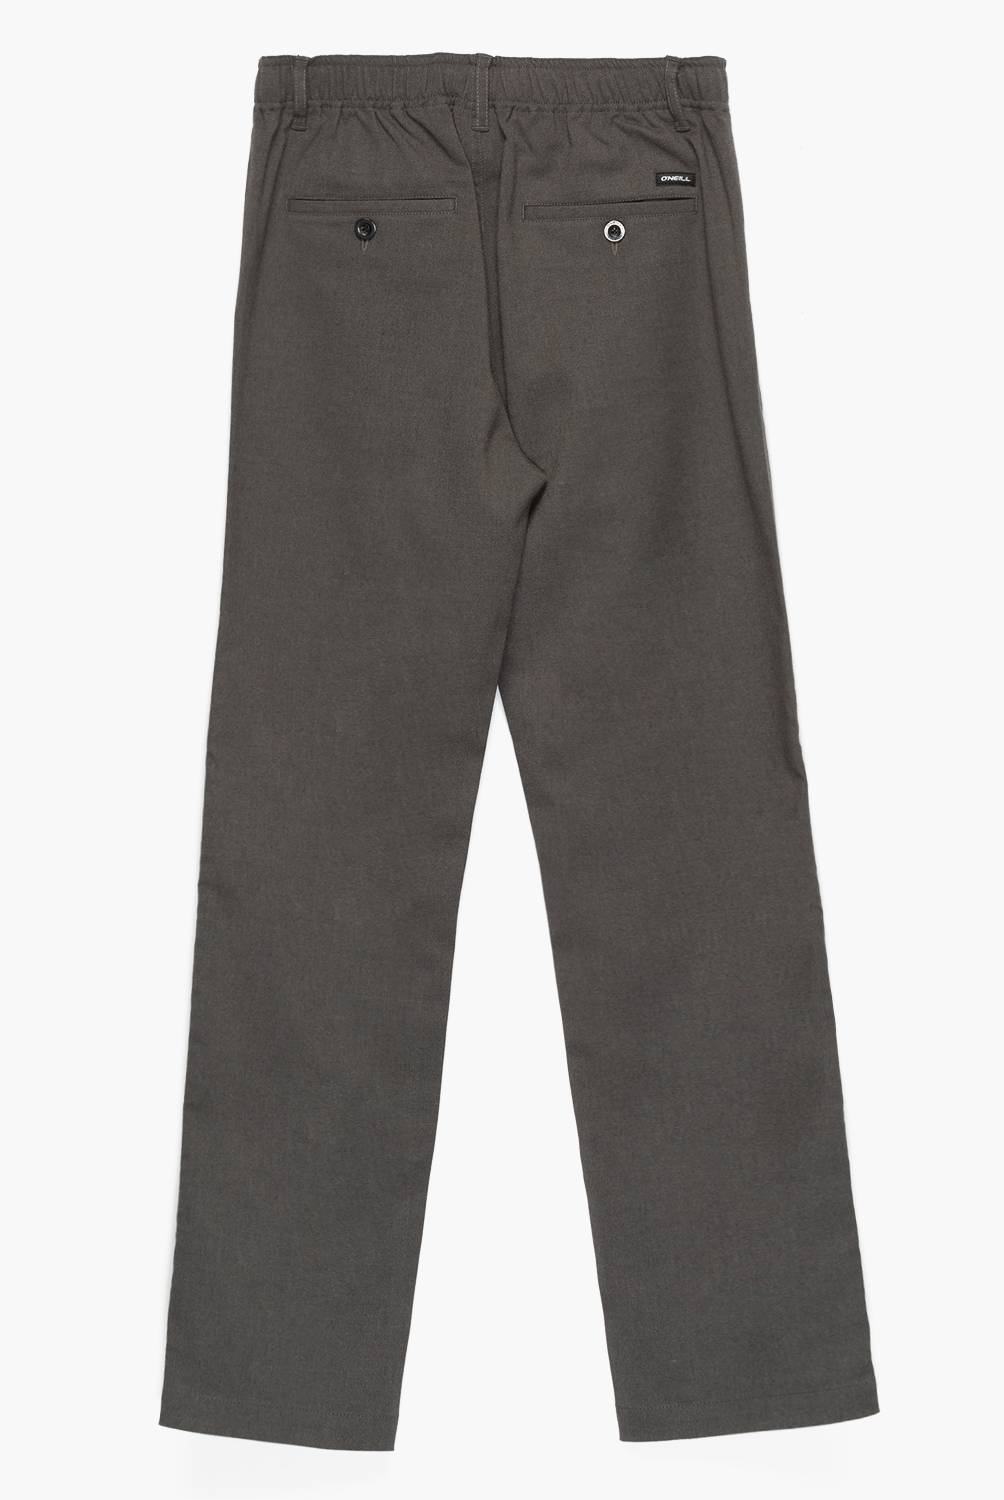 O'NEILL - Oneill Pantalón Escolar , Strech , Pretina 10%  Elasticada ,4 Bolsillos , Color Gris Niño